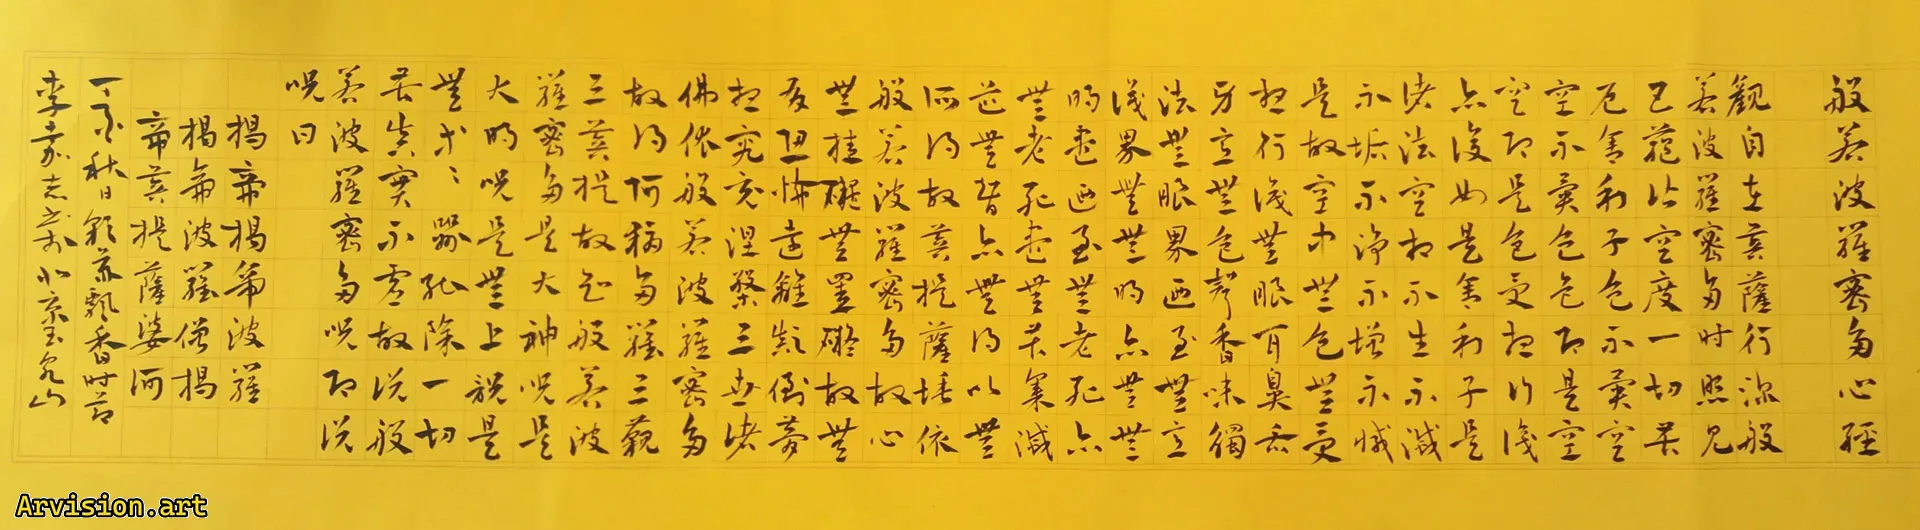 Праджана Паламита многочисленные работы китайской каллиграфии